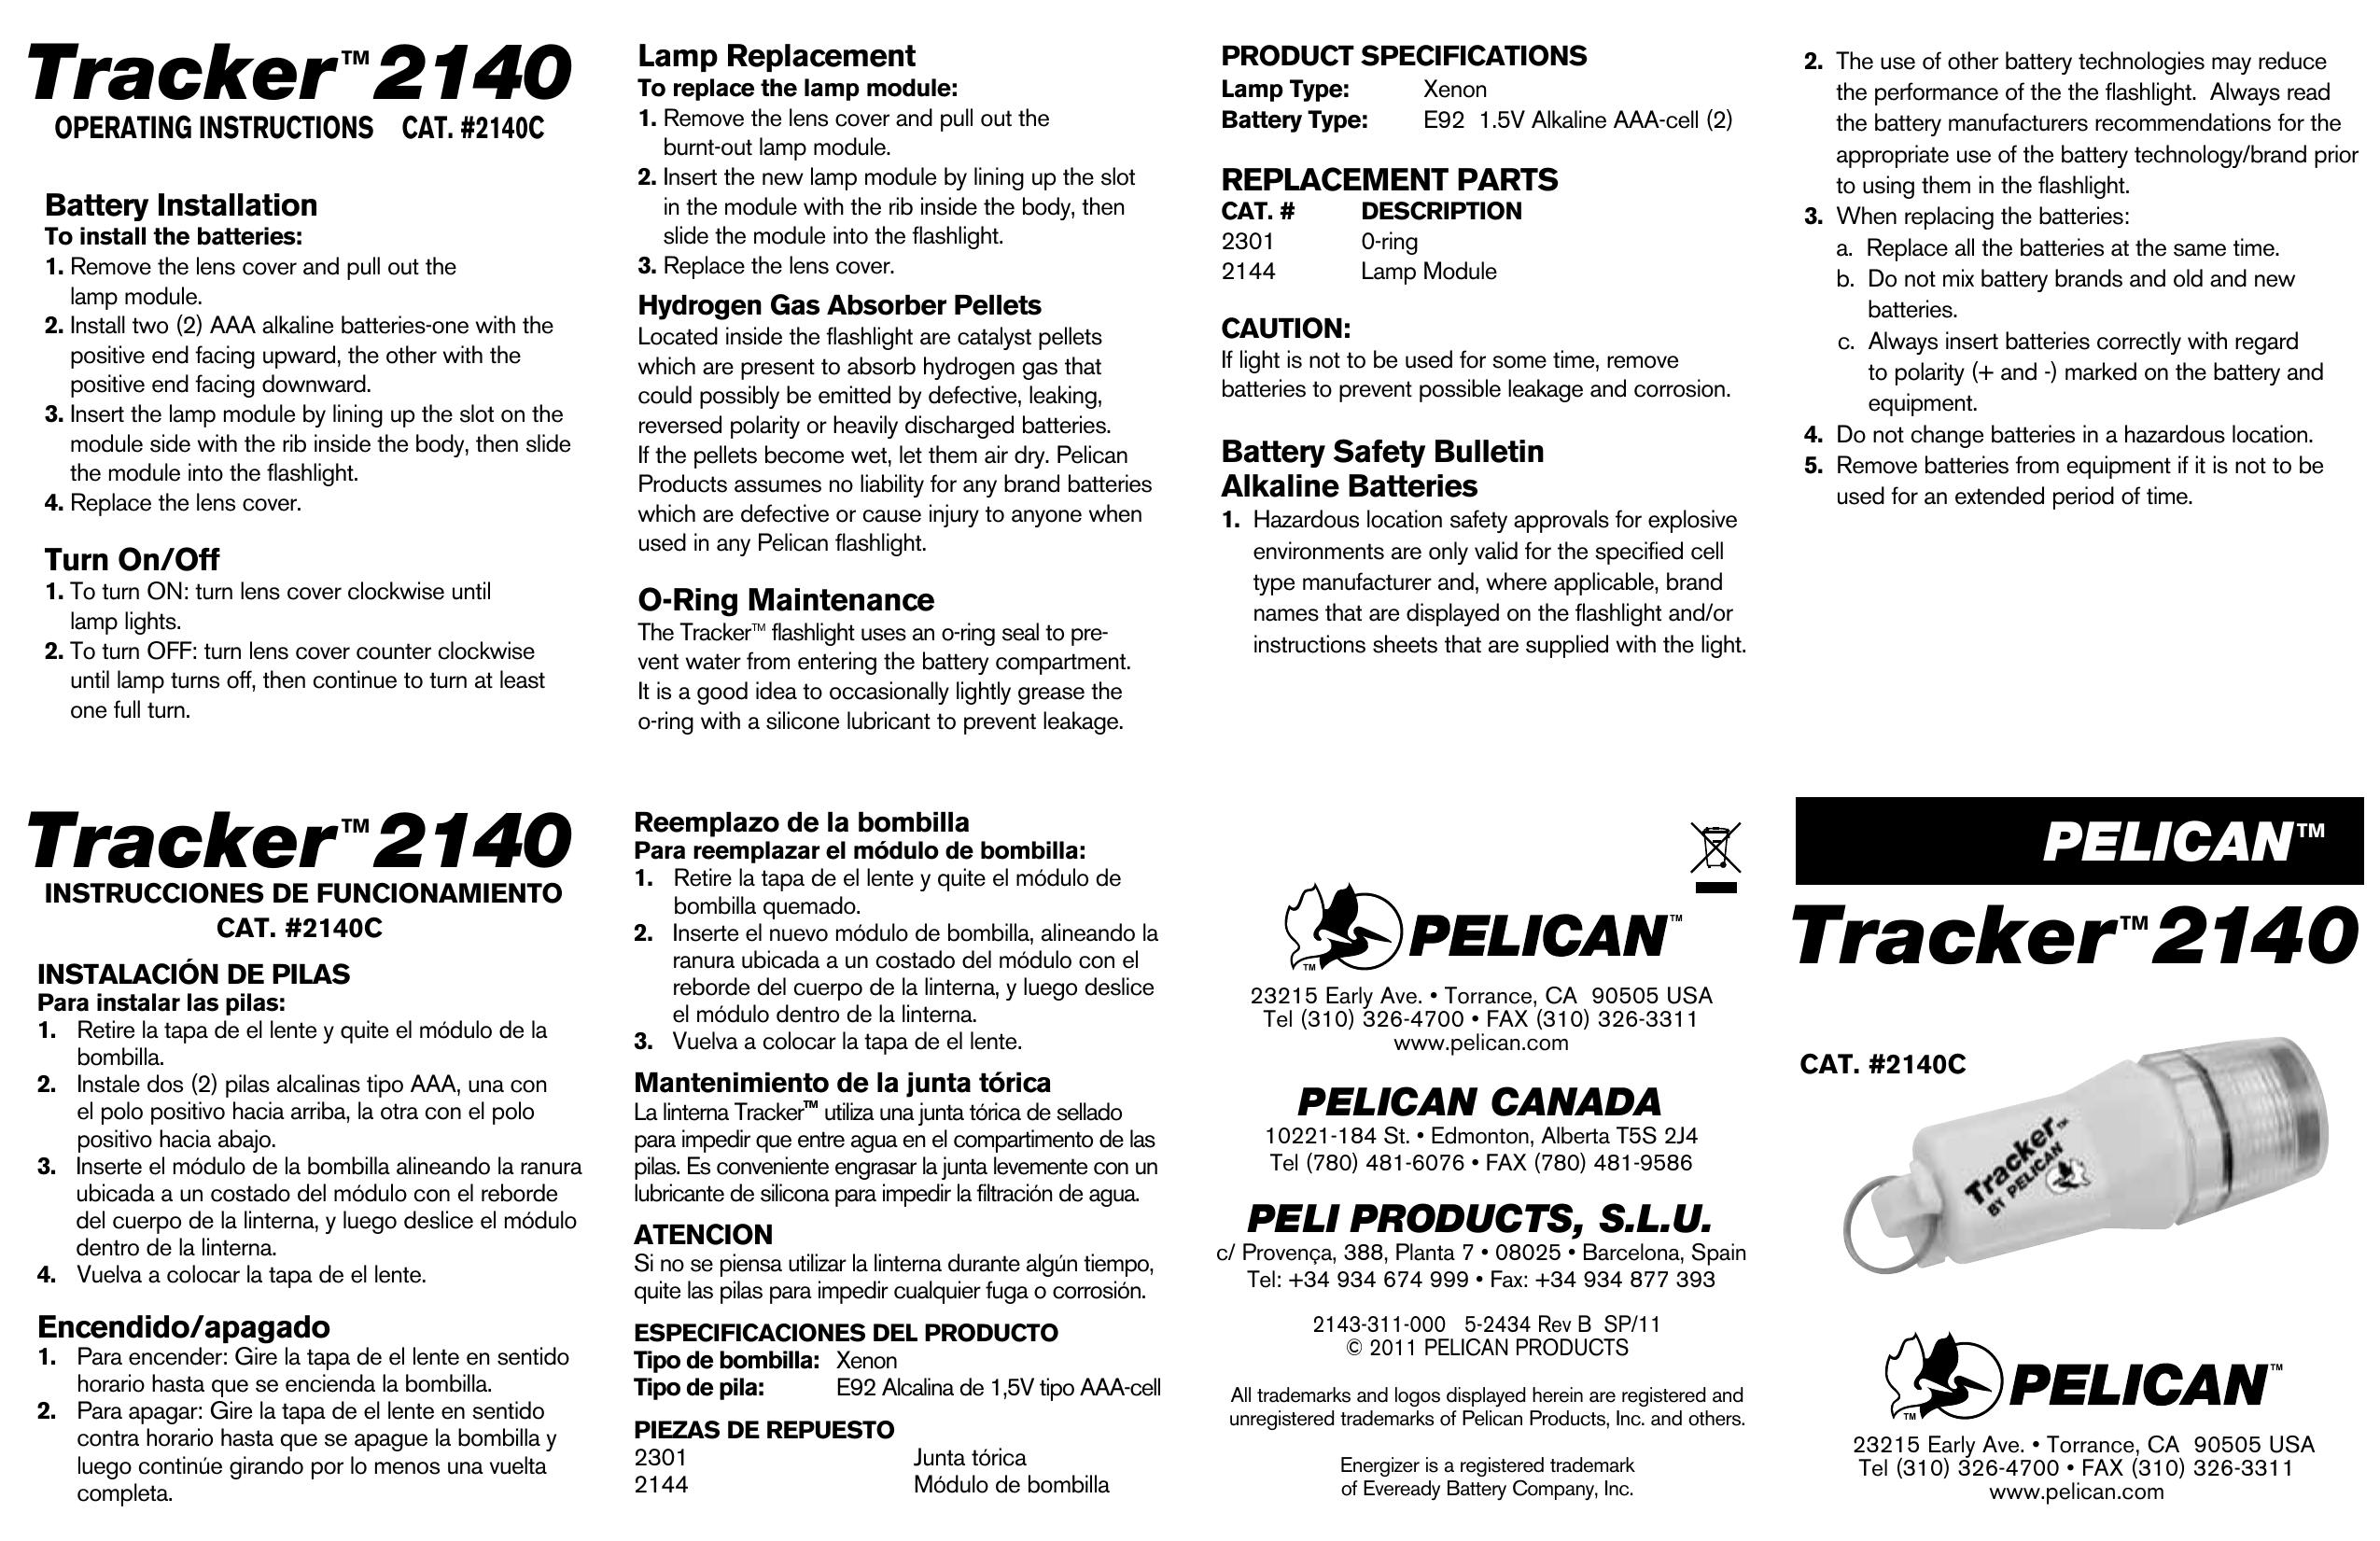 Pelican 2140C Recording Equipment User Manual